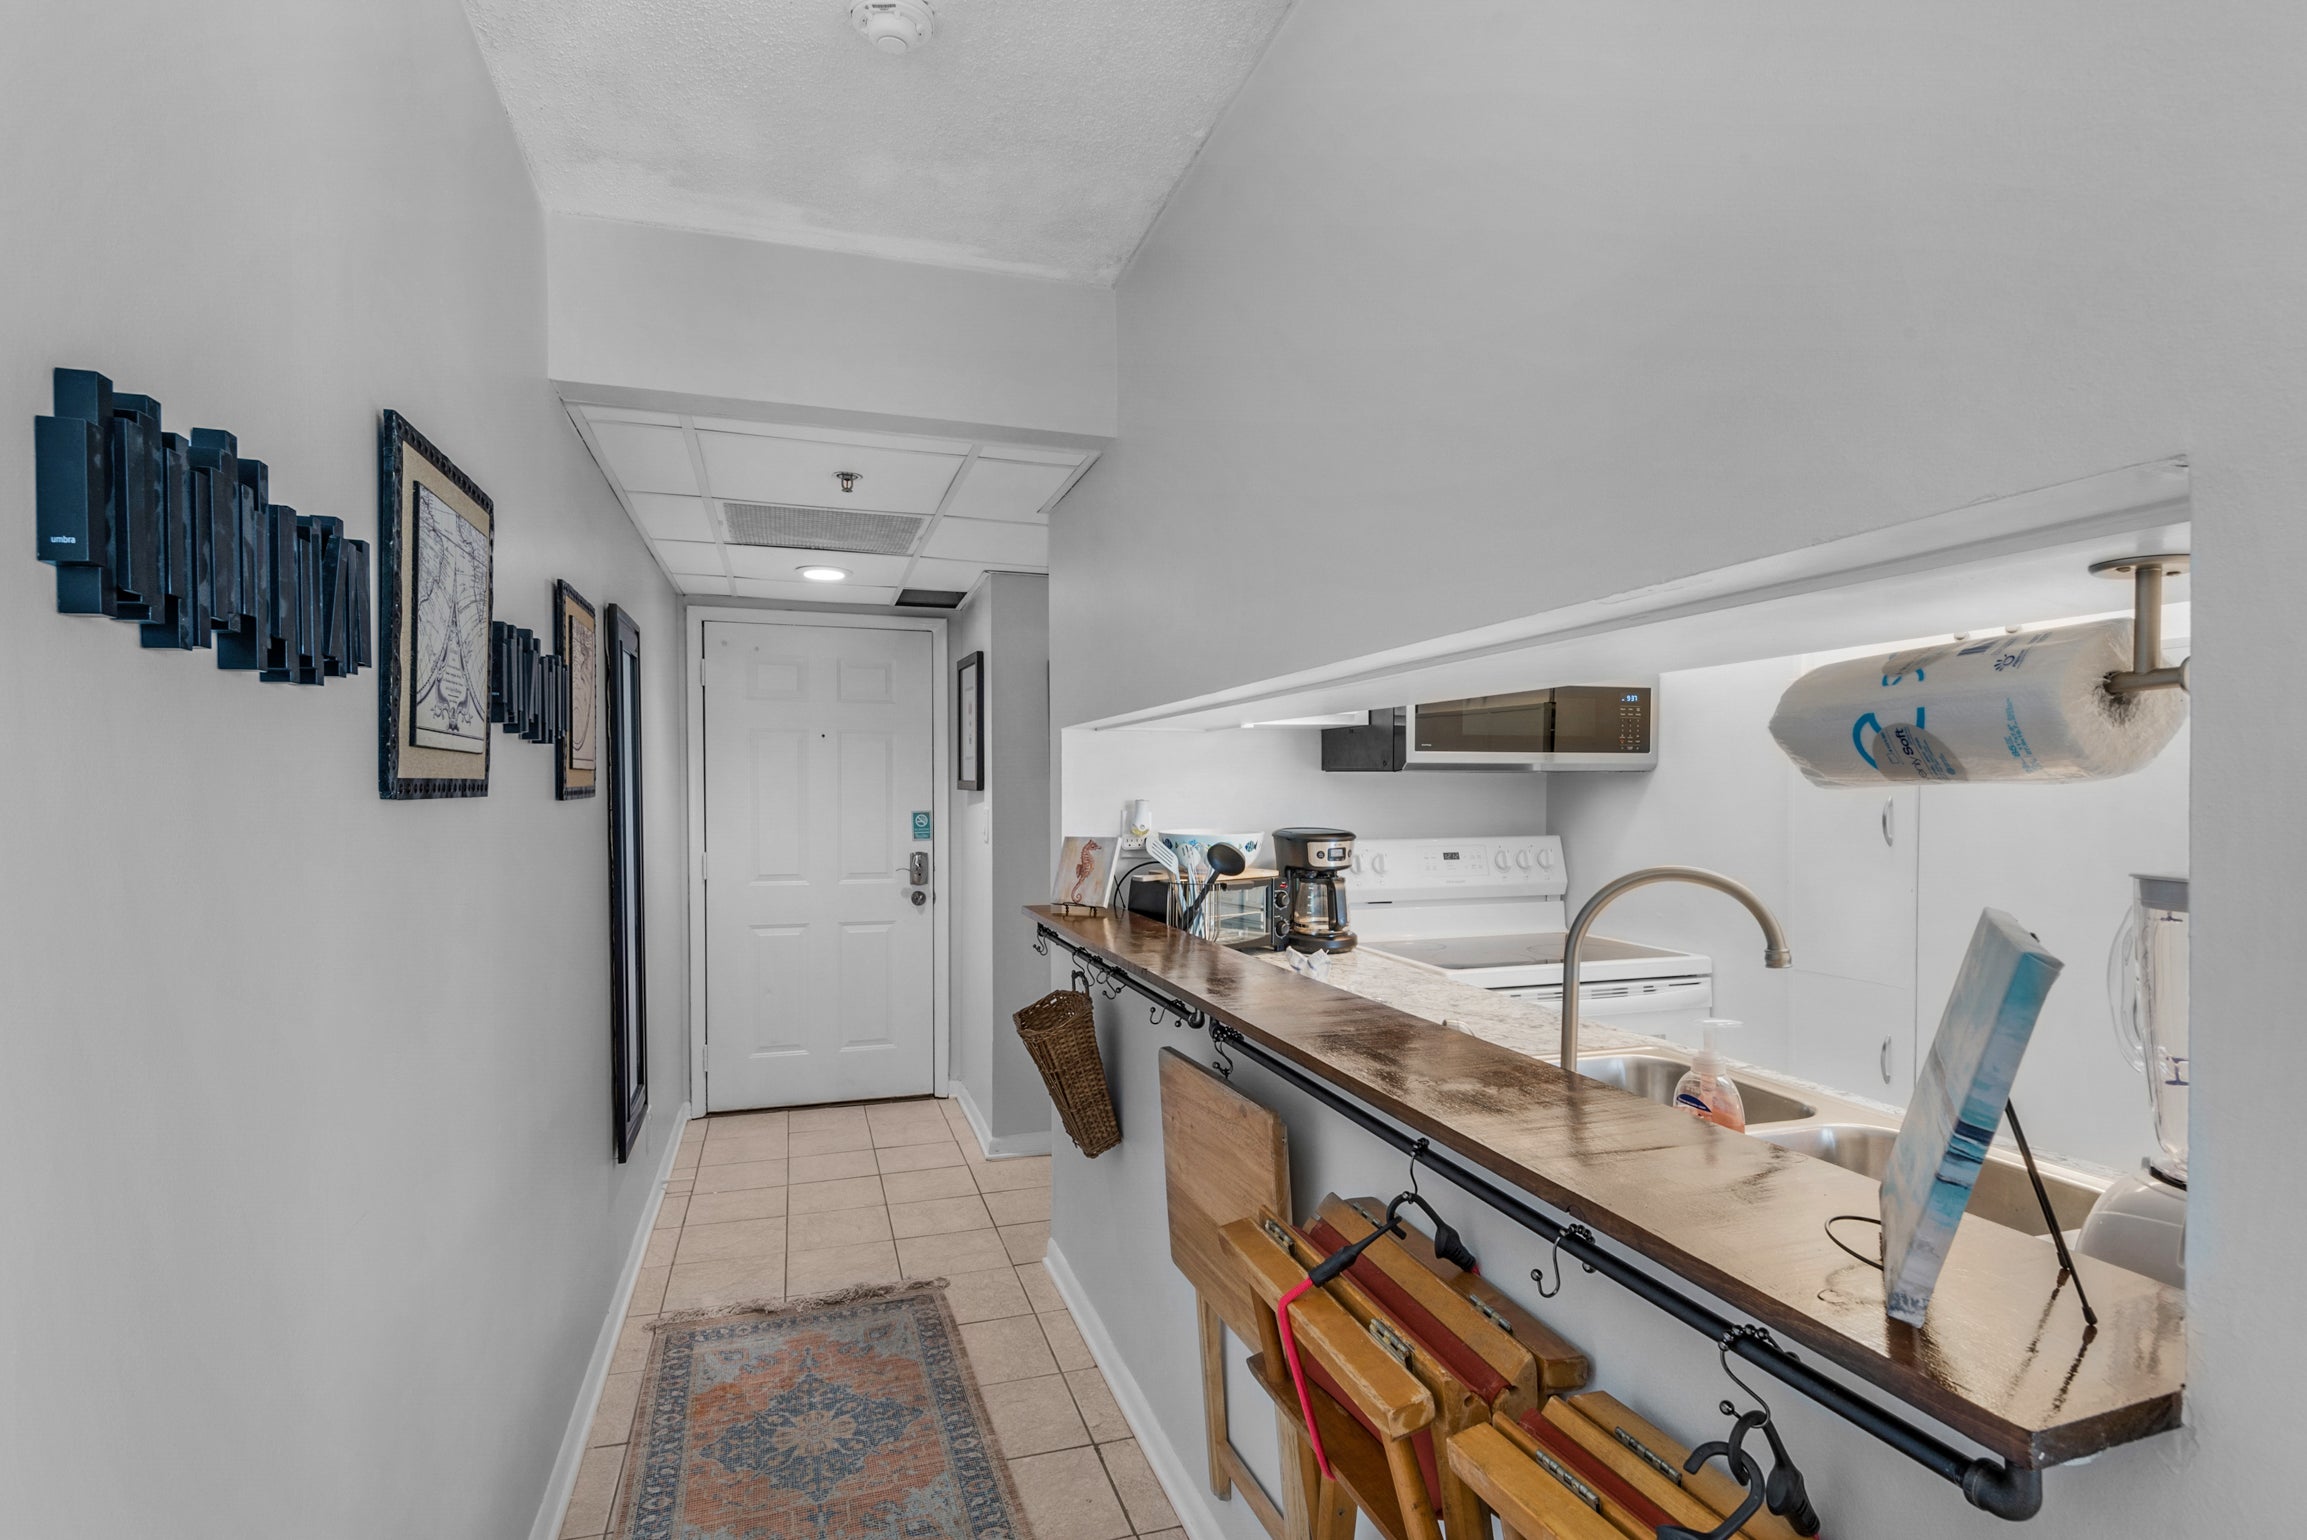 Hallway with kitchen view